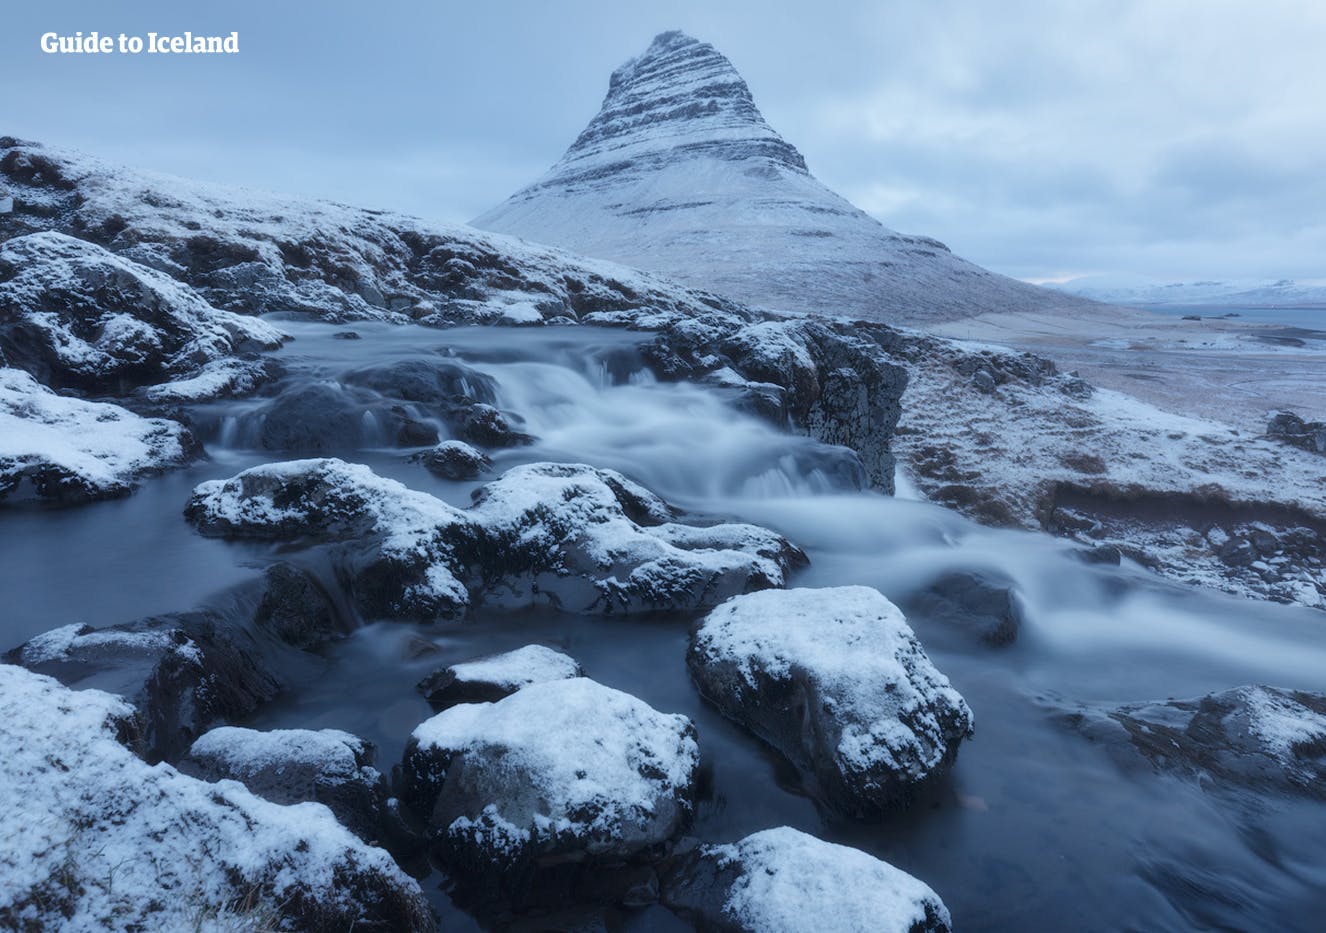 Kirkjufell en hiver a été utilisé dans Game of Thrones, comme un emplacement au nord du mur.